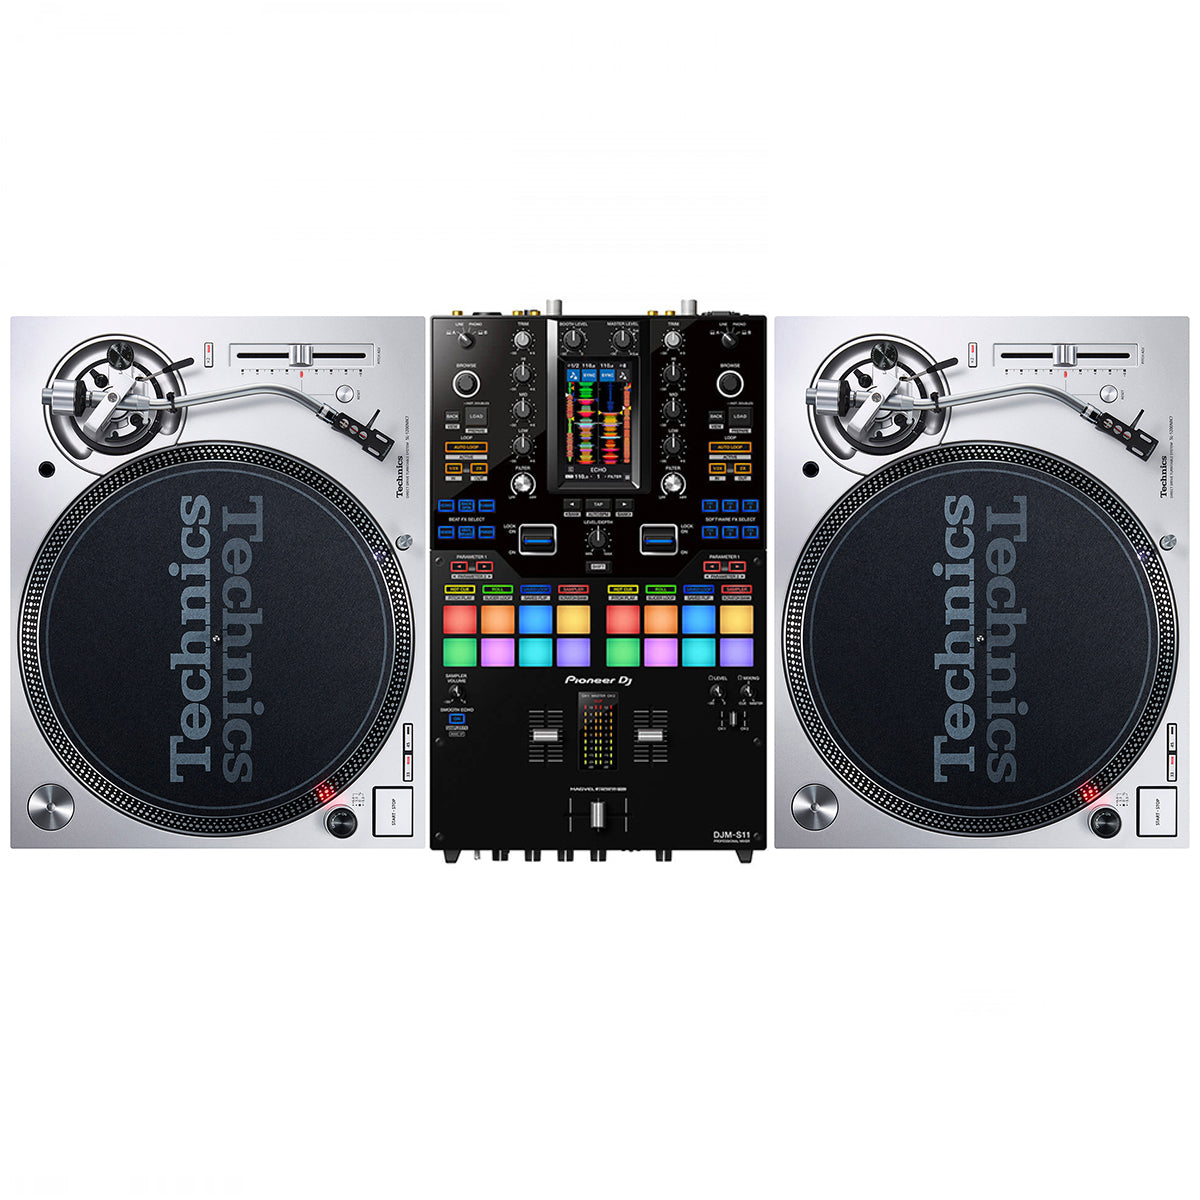 Technics SL1200 MK7 + Pioneer DJ DJM-S11 Mixer